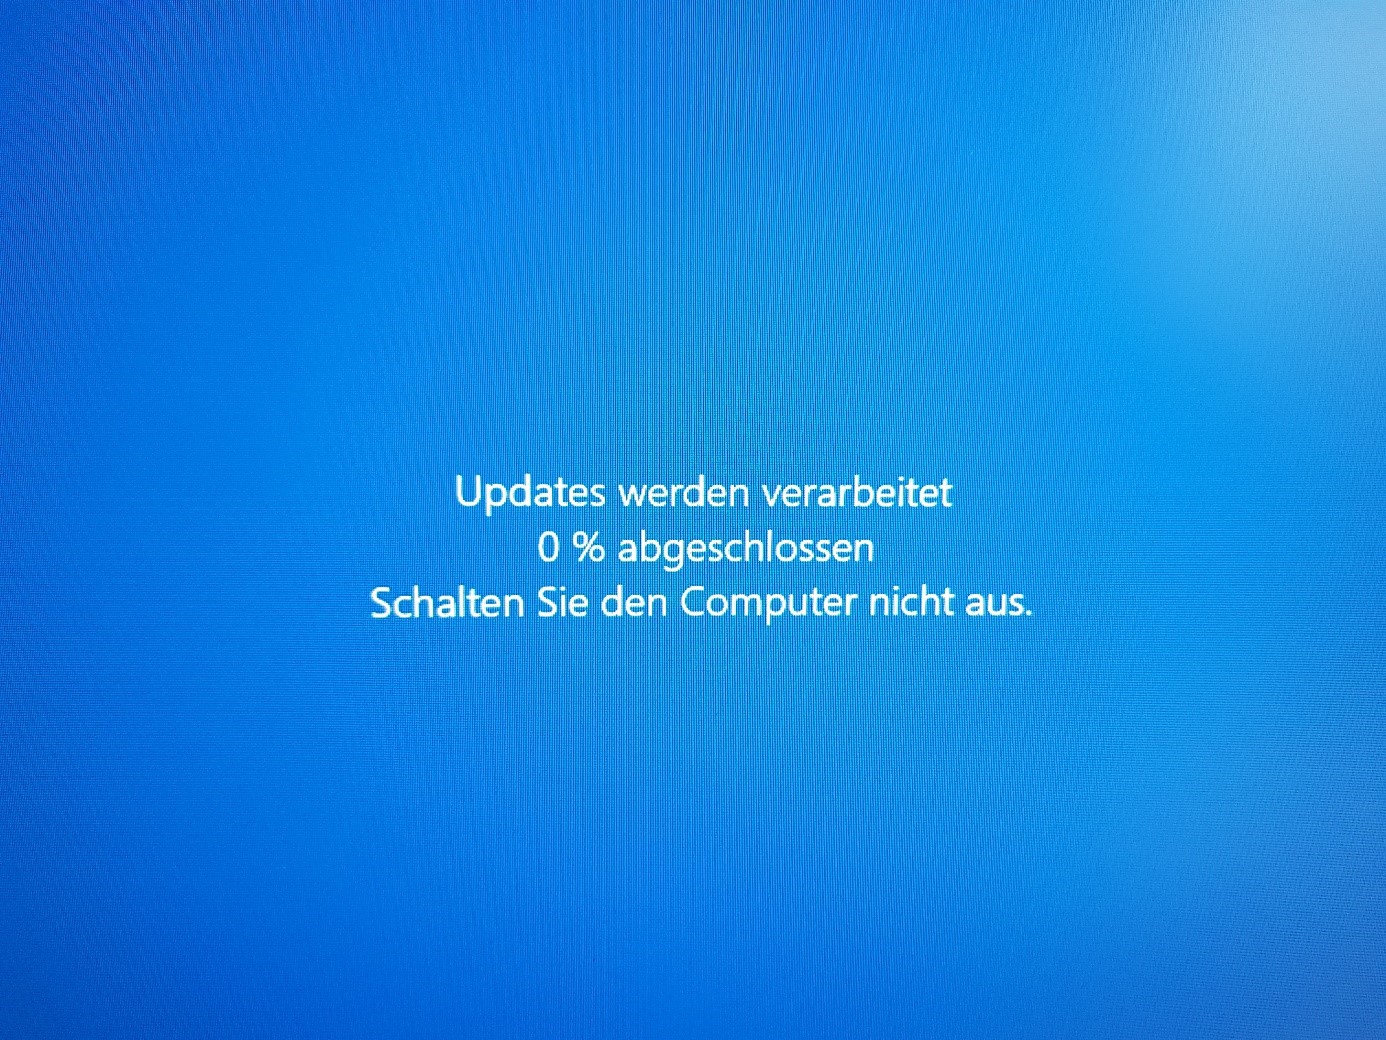 WindowsUpdate kann nicht geamcht werden